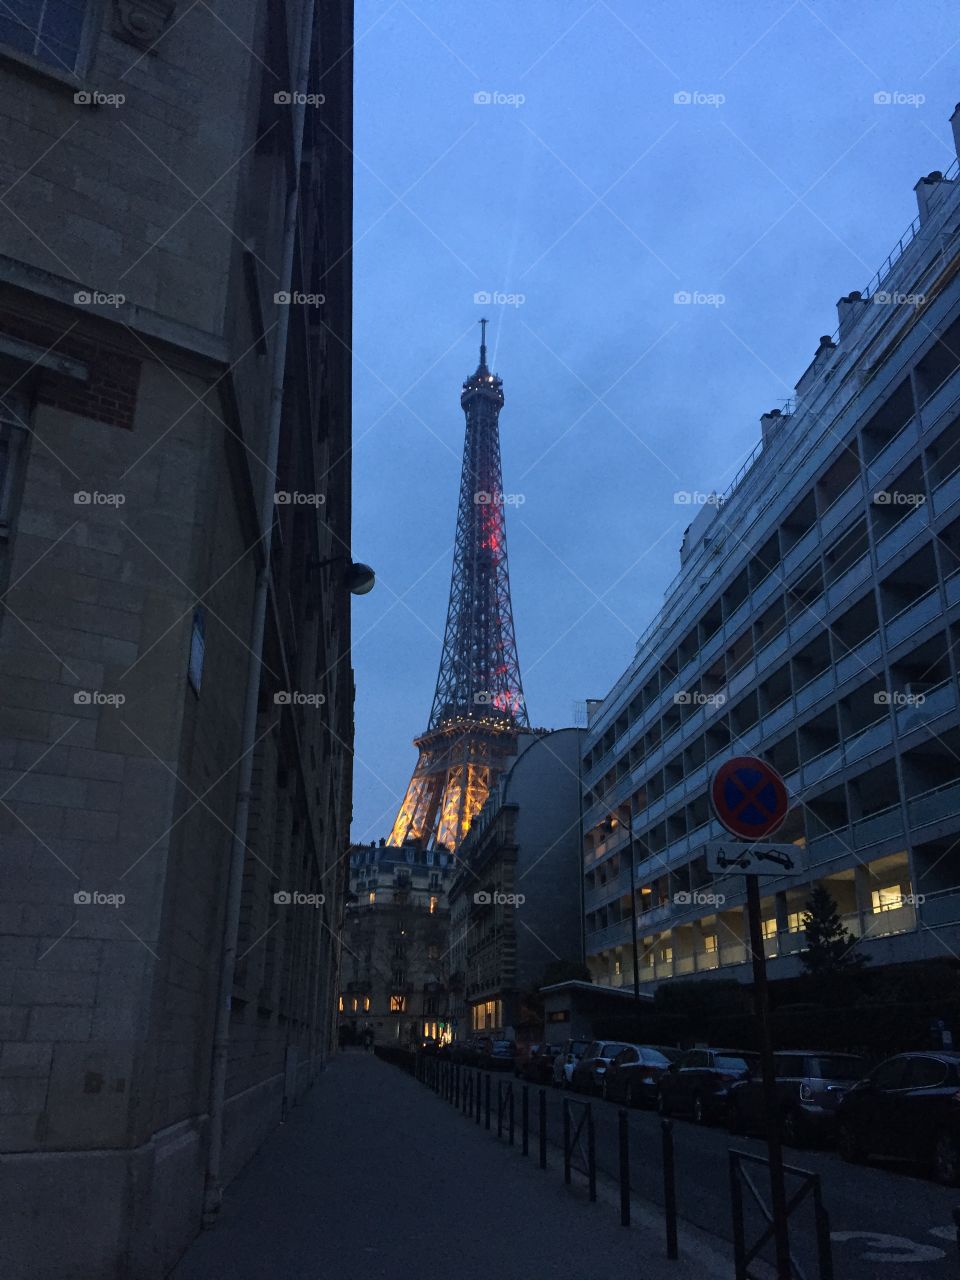 Paris in the evening 